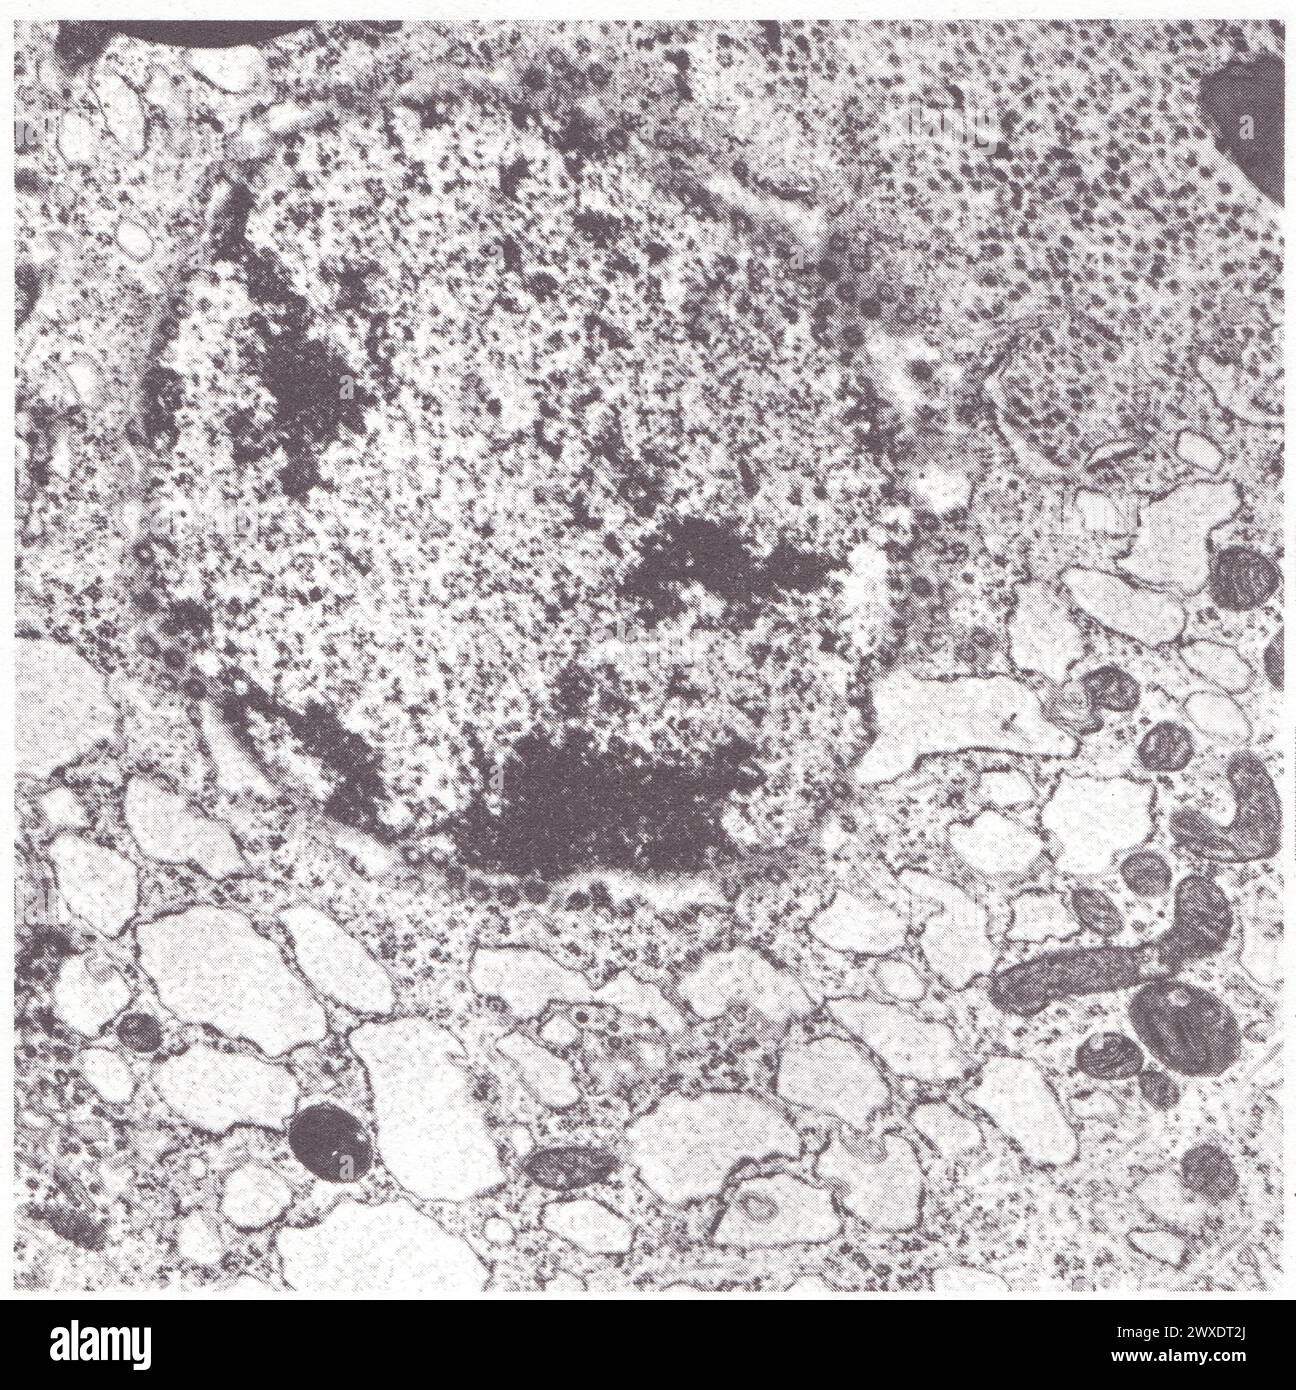 Structure d'ensemble d'une cellule glande de mue du Criquet Stockfoto